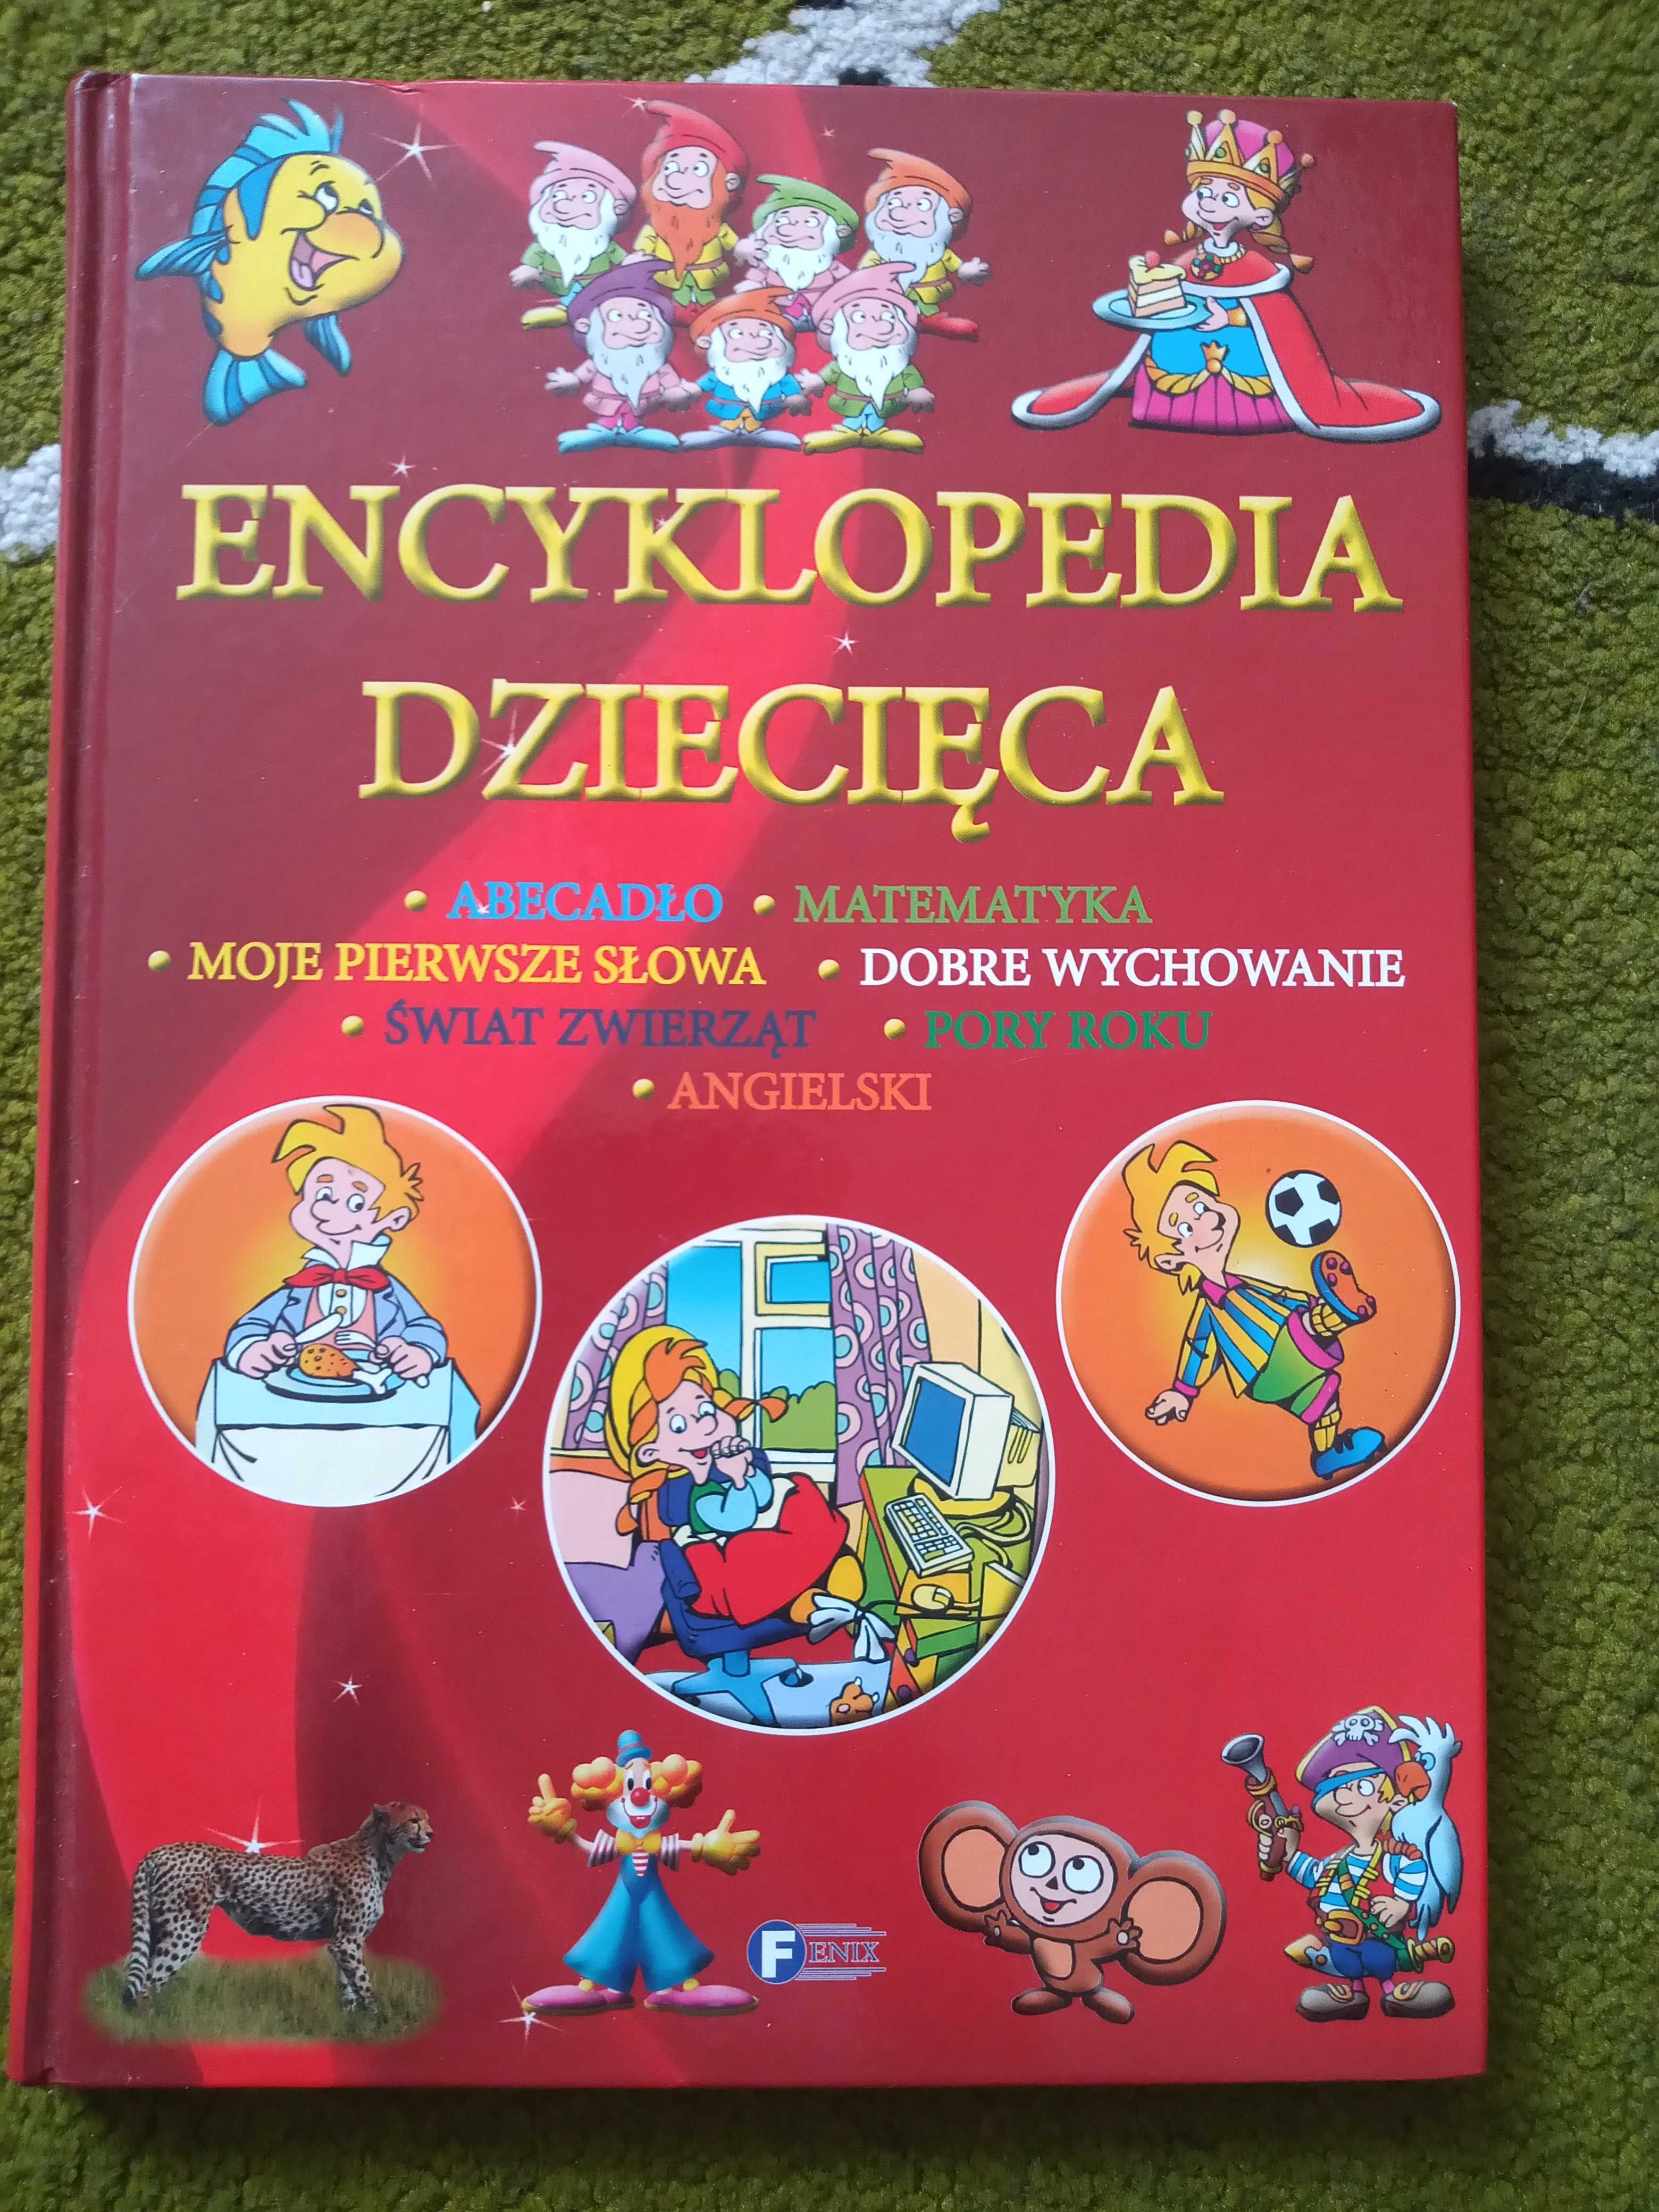 Encyklopedia dziecięca